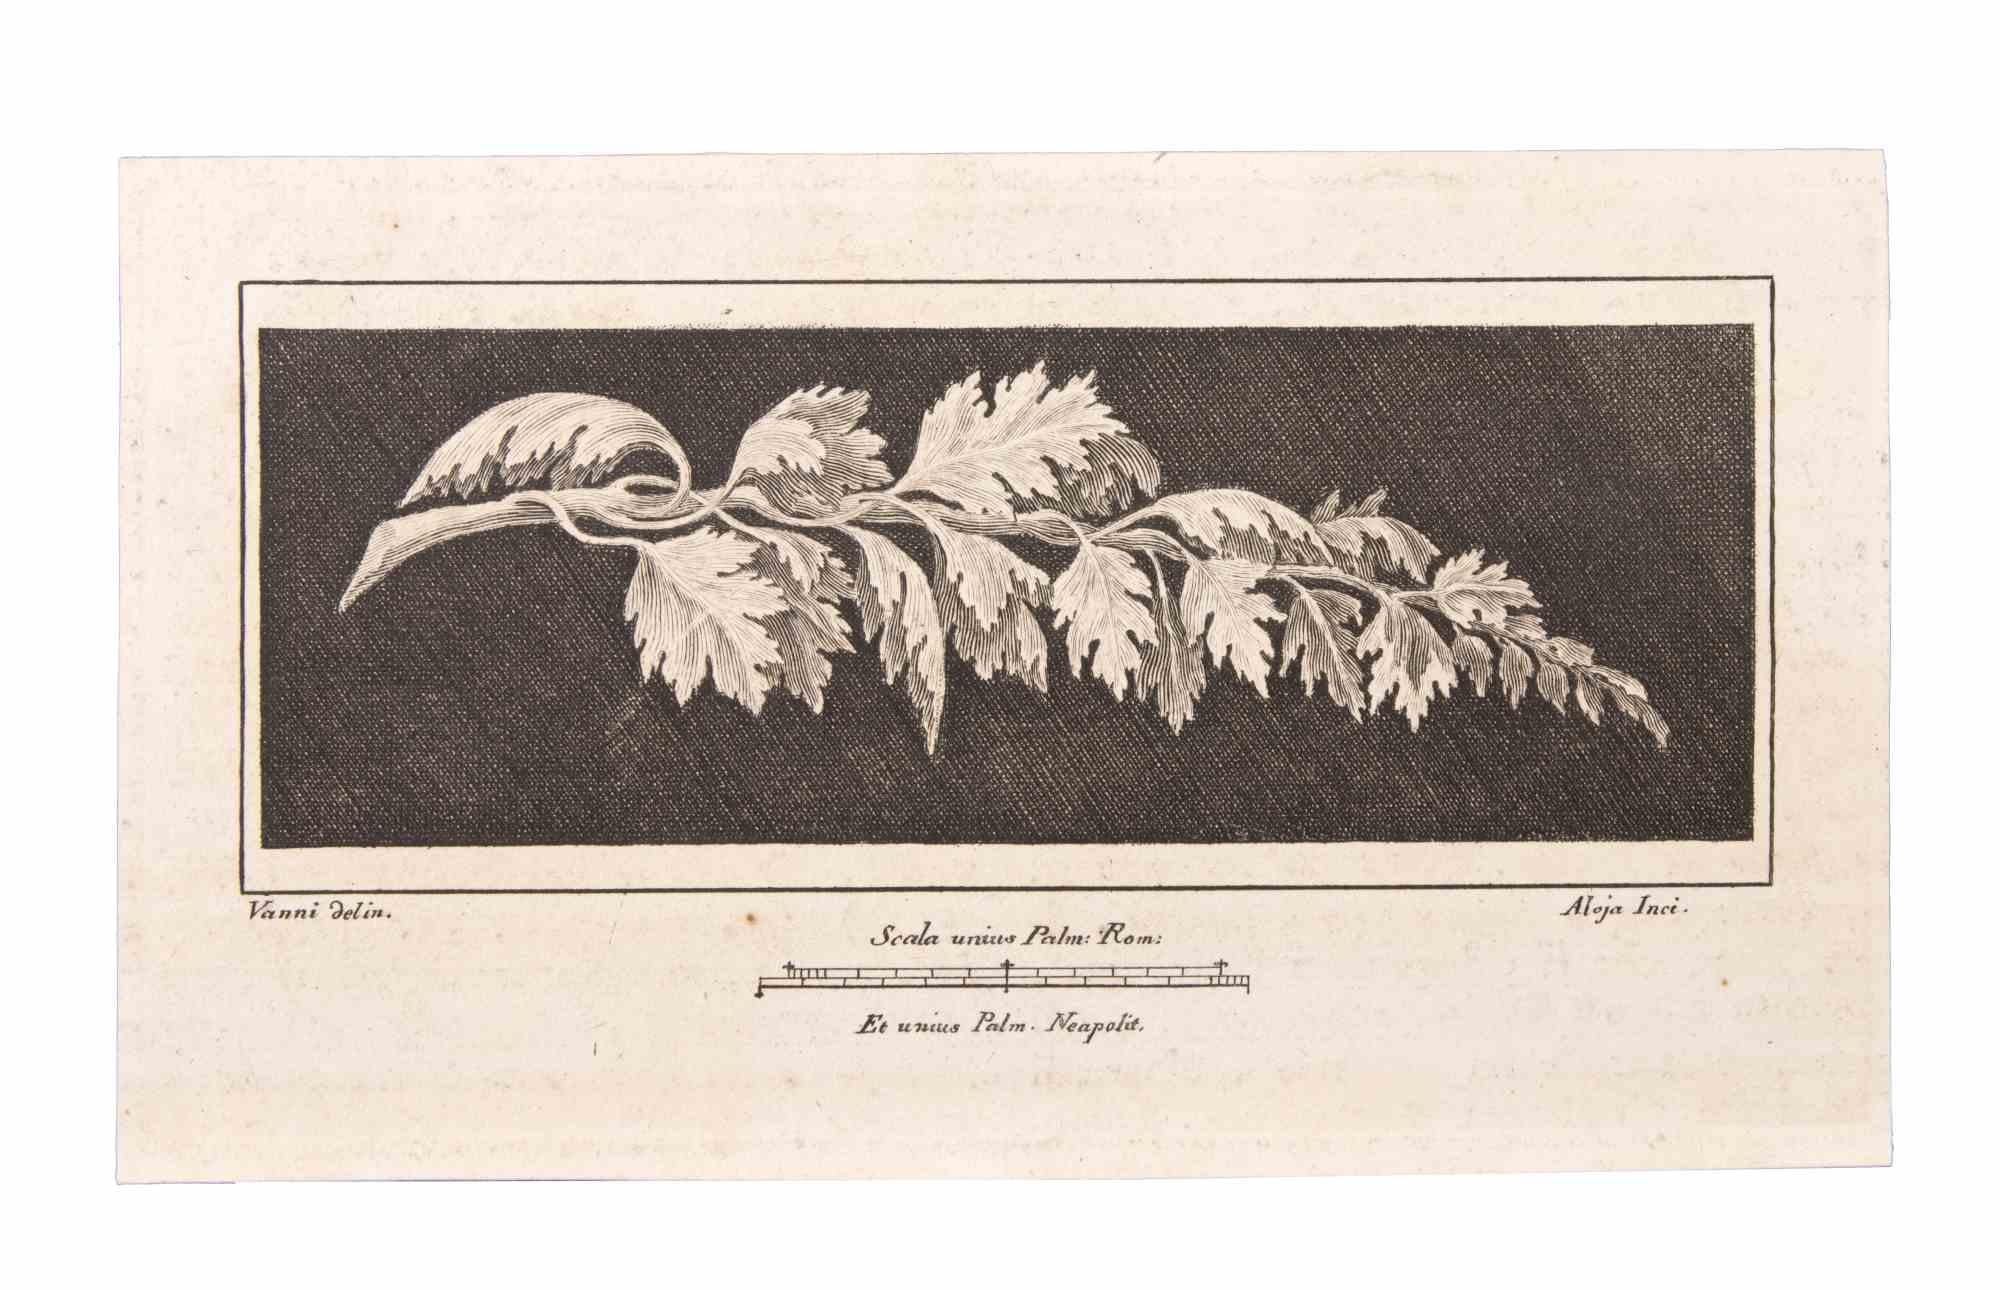 Ranch avec feuilles est une gravure réalisée par Vincenzo Aloja (1768-1817).

La gravure appartient à la suite d'estampes "Antiquités d'Herculanum exposées" (titre original : "Le Antichità di Ercolano Esposte"), un volume de huit gravures des